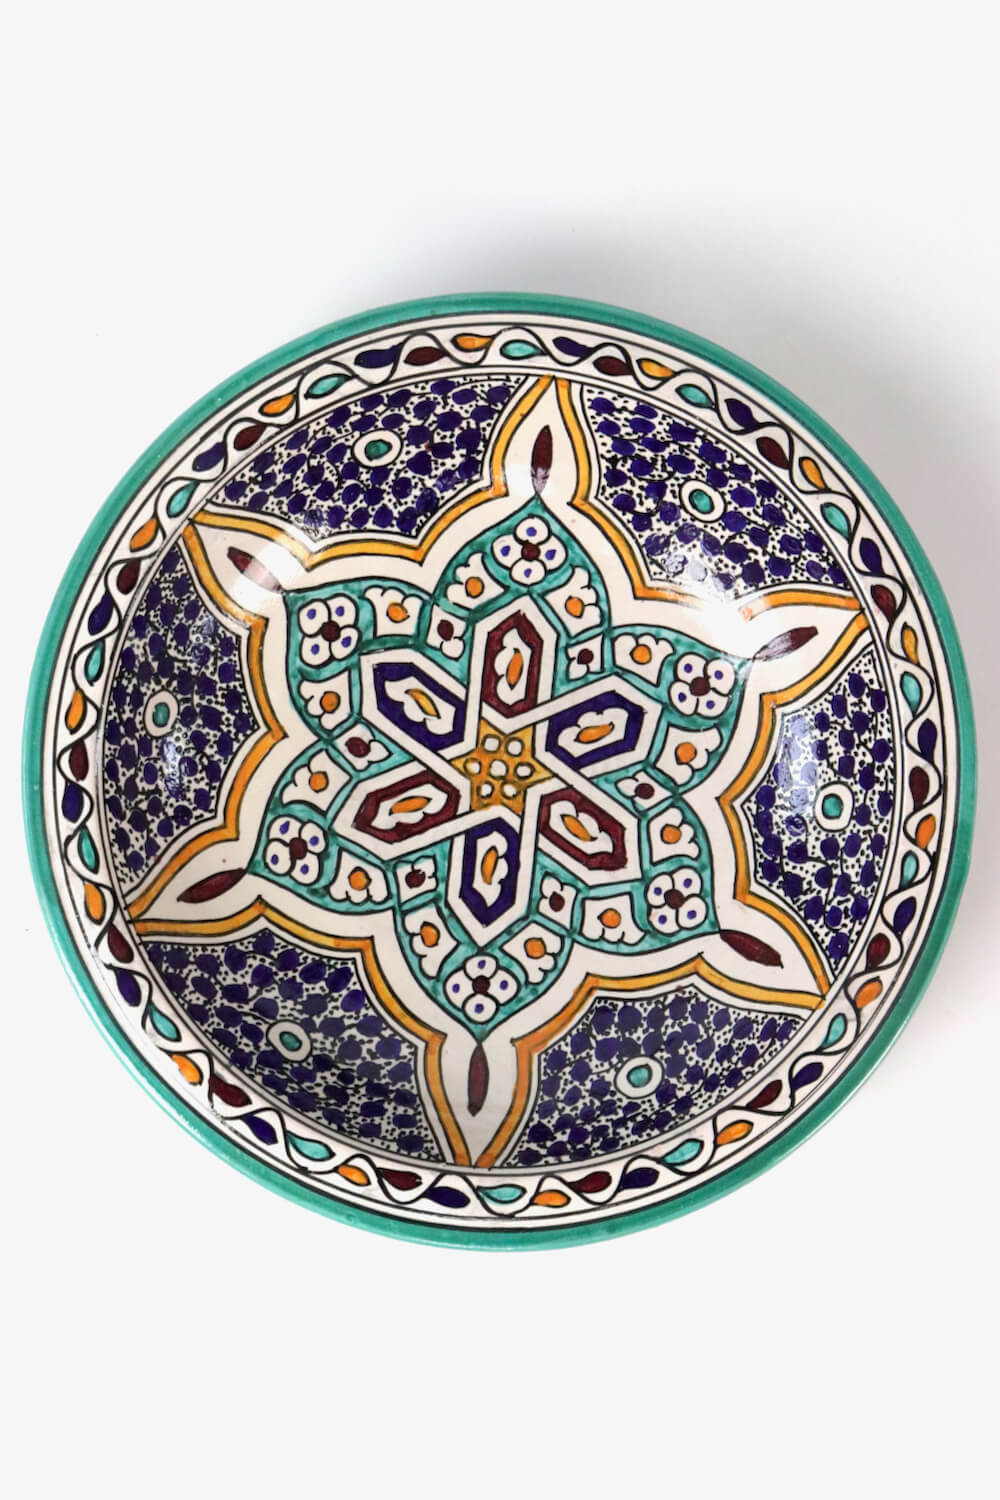 Keramik Schale bunt Marokko ø35 cm  